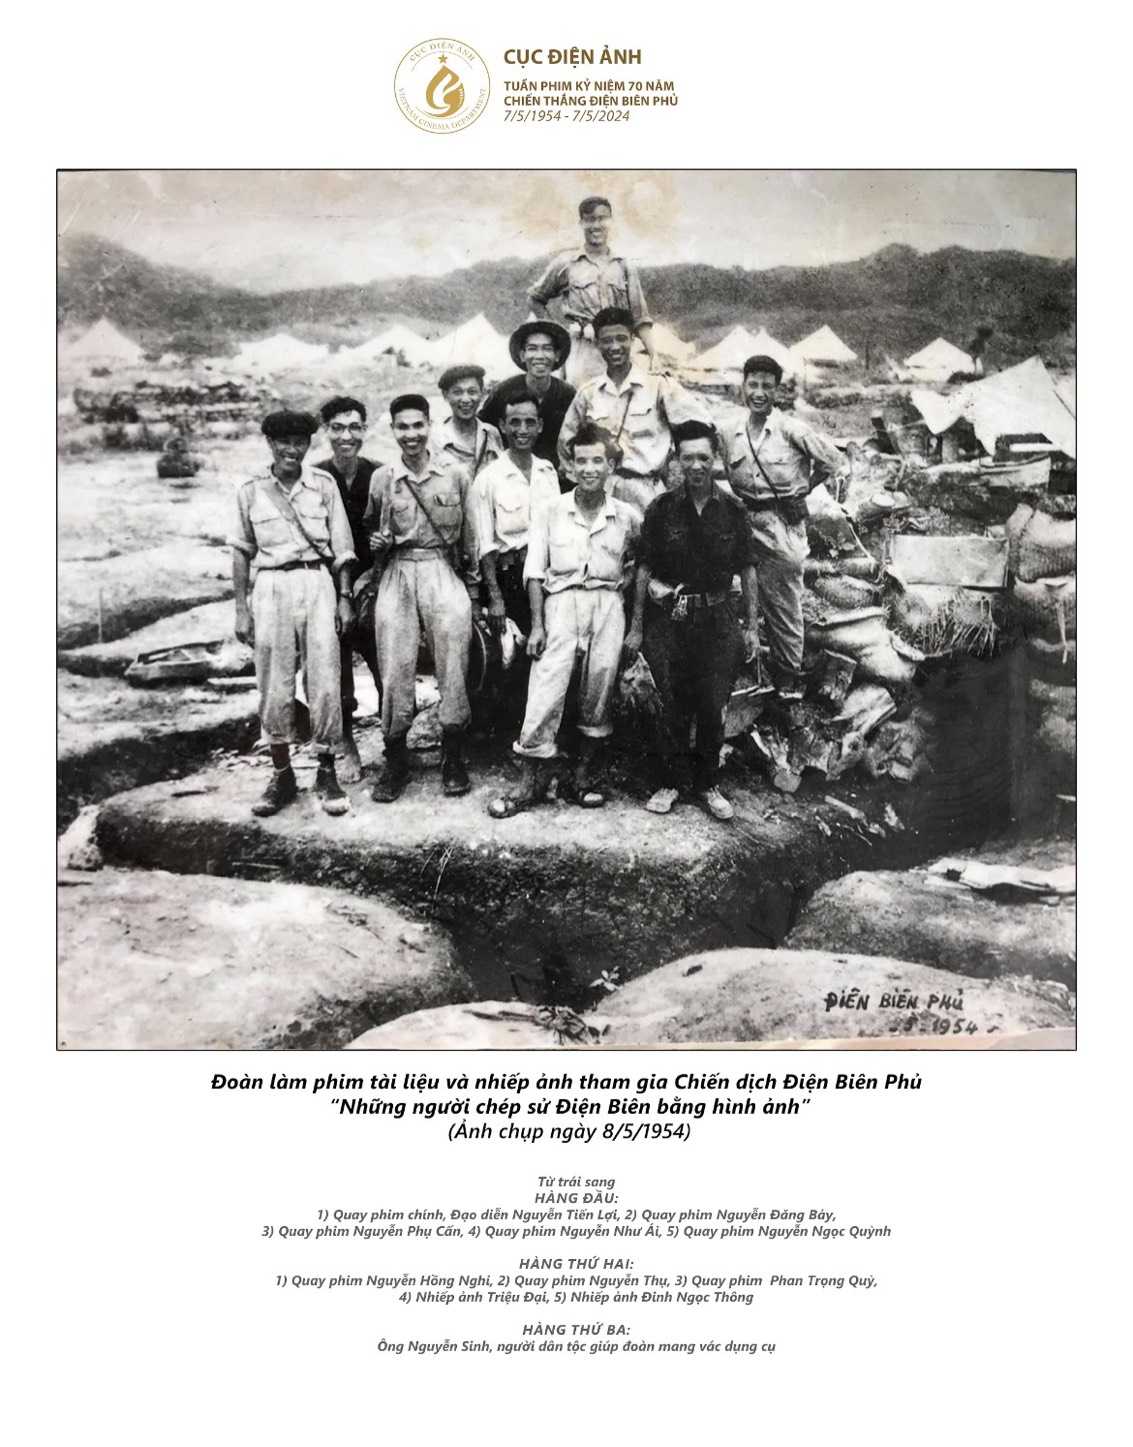 Tuần phim Kỷ niệm 70 năm Chiến thắng Điện Biên Phủ (07/5/1954 - 07/5/2024) - Ảnh 6.